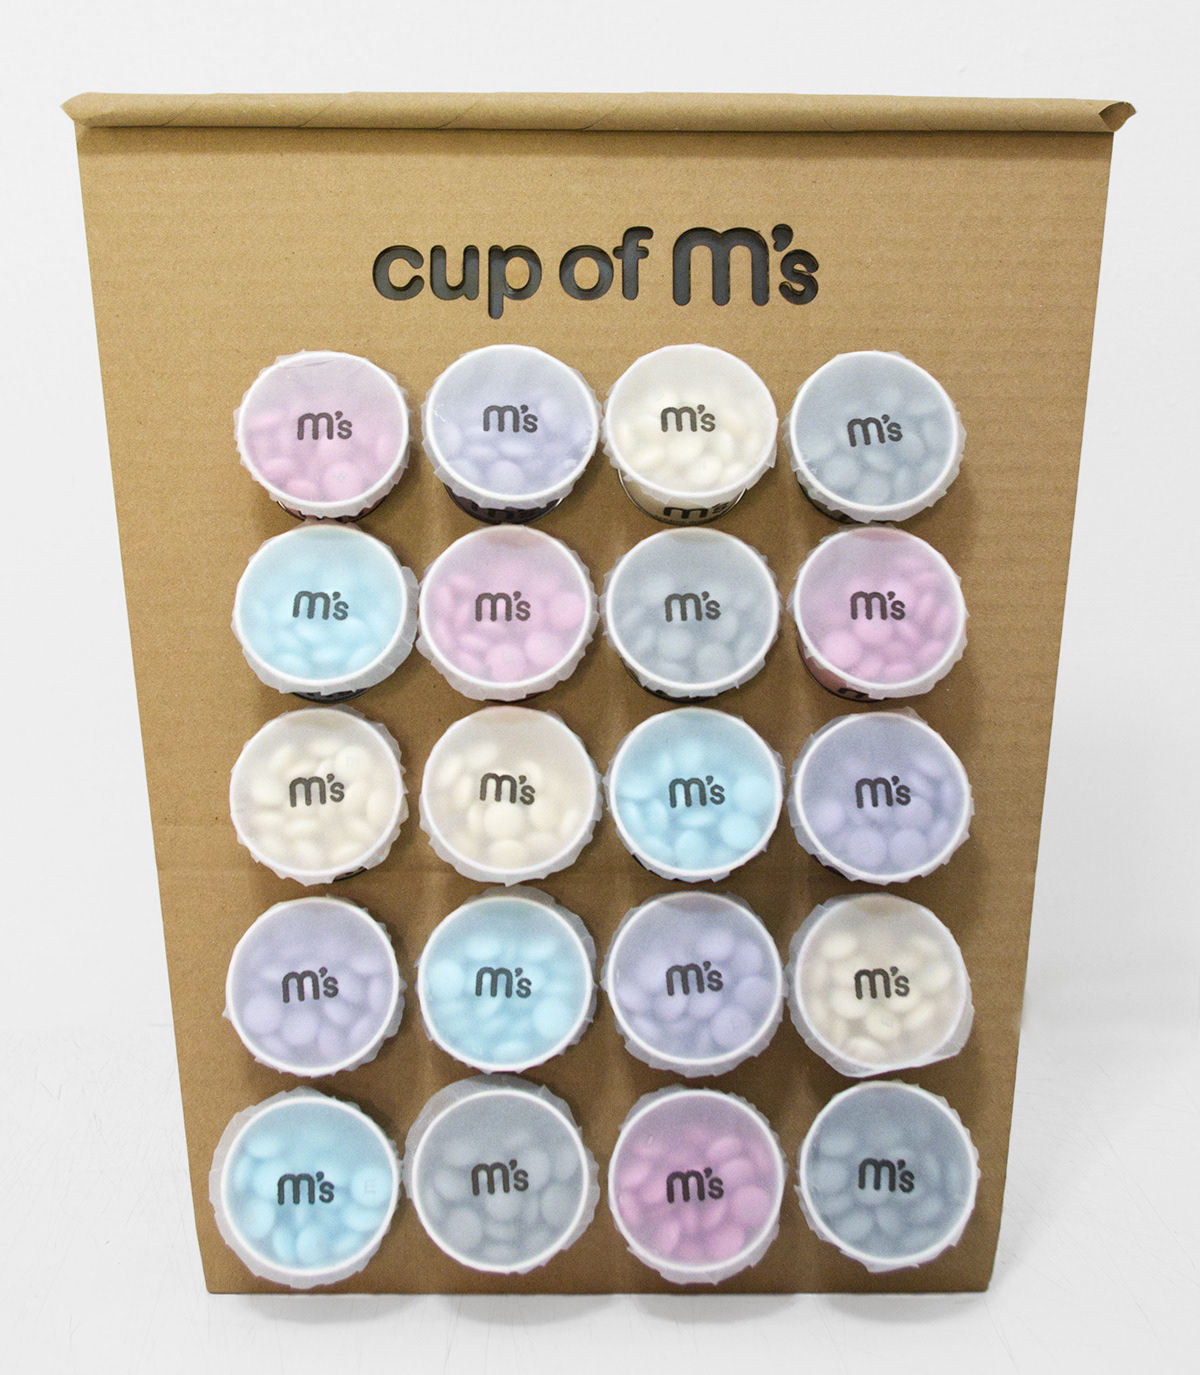 repackaging M&M's display design package display chocolate